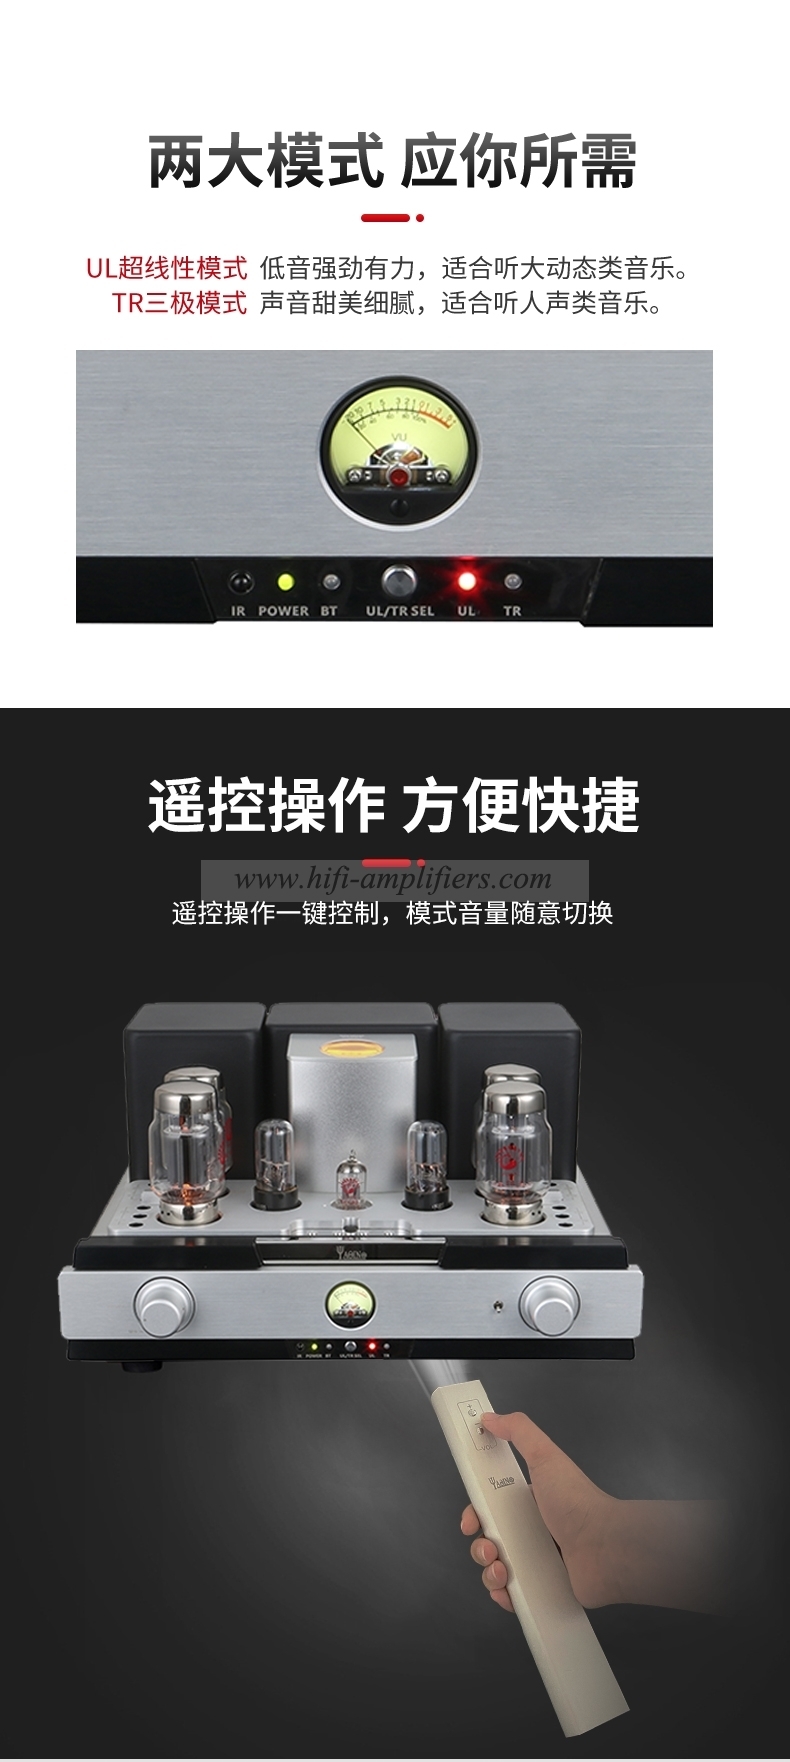 AMPLIFICADOR DE TUBO Yaqin MS-88 KT88, amplificador de tubo integrado, entrada USB Bluetooth, amplificador de potencia HiFi